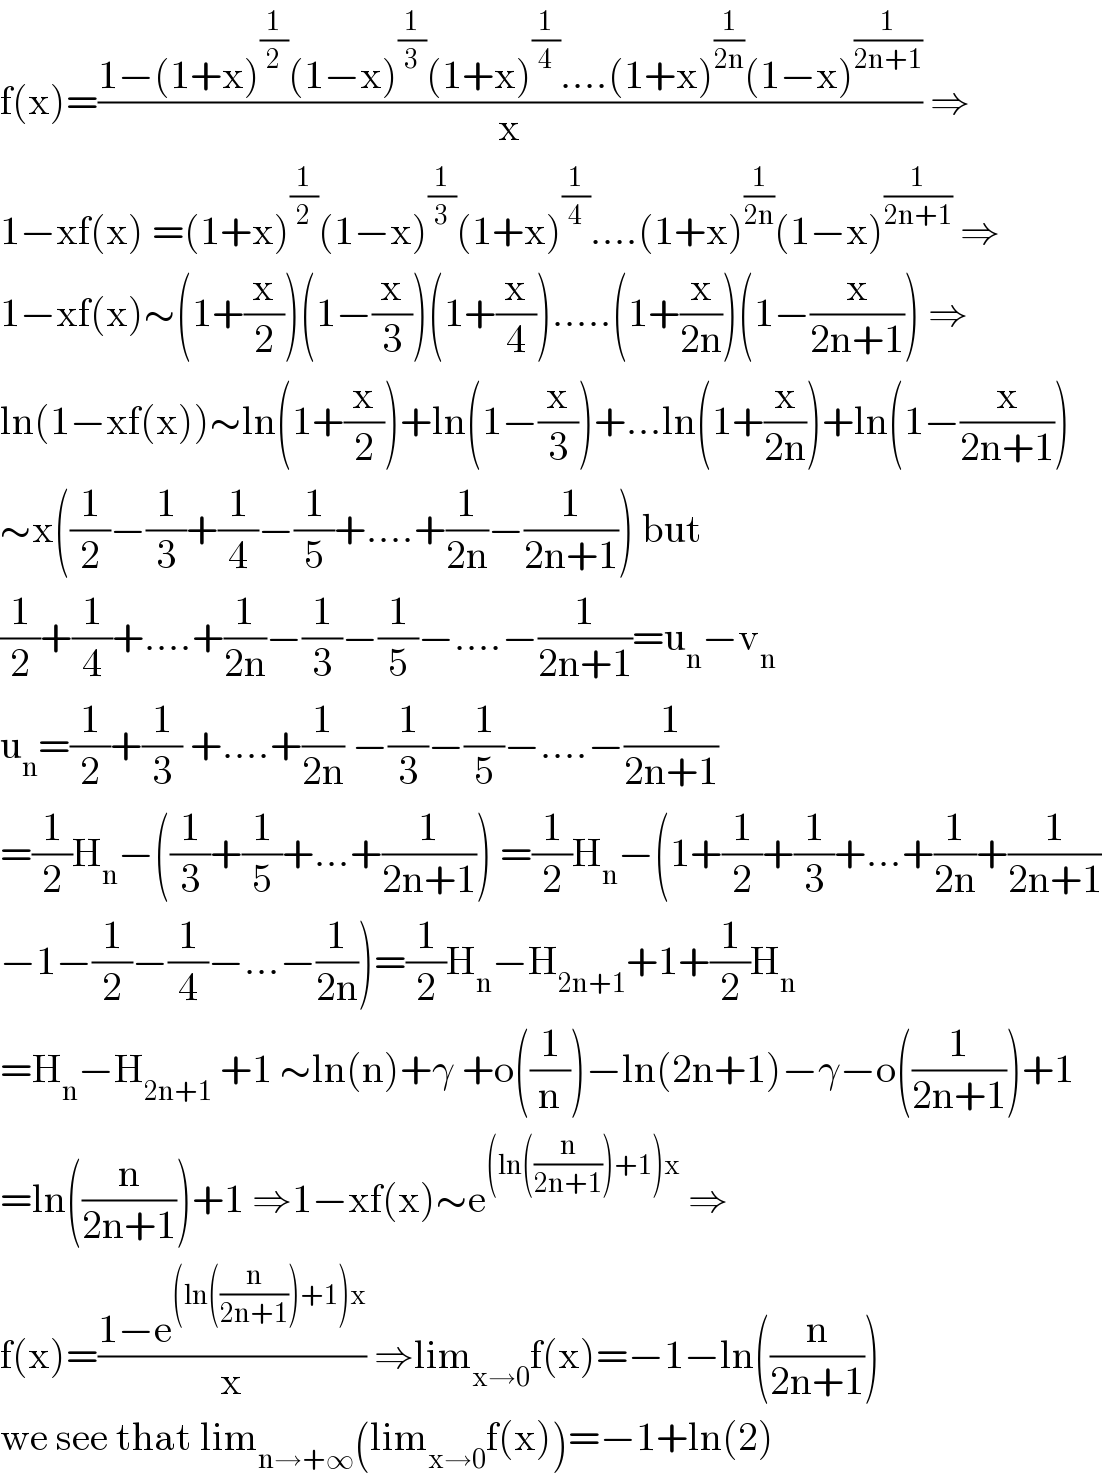 f(x)=((1−(1+x)^(1/2) (1−x)^(1/3) (1+x)^(1/4) ....(1+x)^(1/(2n)) (1−x)^(1/(2n+1)) )/x) ⇒  1−xf(x) =(1+x)^(1/2) (1−x)^(1/3) (1+x)^(1/4) ....(1+x)^(1/(2n)) (1−x)^(1/(2n+1))  ⇒  1−xf(x)∼(1+(x/2))(1−(x/3))(1+(x/4)).....(1+(x/(2n)))(1−(x/(2n+1))) ⇒  ln(1−xf(x))∼ln(1+(x/2))+ln(1−(x/3))+...ln(1+(x/(2n)))+ln(1−(x/(2n+1)))  ∼x((1/2)−(1/3)+(1/4)−(1/5)+....+(1/(2n))−(1/(2n+1))) but  (1/2)+(1/4)+....+(1/(2n))−(1/3)−(1/5)−....−(1/(2n+1))=u_n −v_n   u_n =(1/2)+(1/3) +....+(1/(2n)) −(1/3)−(1/5)−....−(1/(2n+1))  =(1/2)H_n −((1/3)+(1/5)+...+(1/(2n+1))) =(1/2)H_n −(1+(1/2)+(1/3)+...+(1/(2n))+(1/(2n+1))  −1−(1/2)−(1/4)−...−(1/(2n)))=(1/2)H_n −H_(2n+1) +1+(1/2)H_n   =H_n −H_(2n+1)  +1 ∼ln(n)+γ +o((1/n))−ln(2n+1)−γ−o((1/(2n+1)))+1  =ln((n/(2n+1)))+1 ⇒1−xf(x)∼e^((ln((n/(2n+1)))+1)x)  ⇒  f(x)=((1−e^((ln((n/(2n+1)))+1)x) )/x) ⇒lim_(x→0) f(x)=−1−ln((n/(2n+1)))  we see that lim_(n→+∞) (lim_(x→0) f(x))=−1+ln(2)  